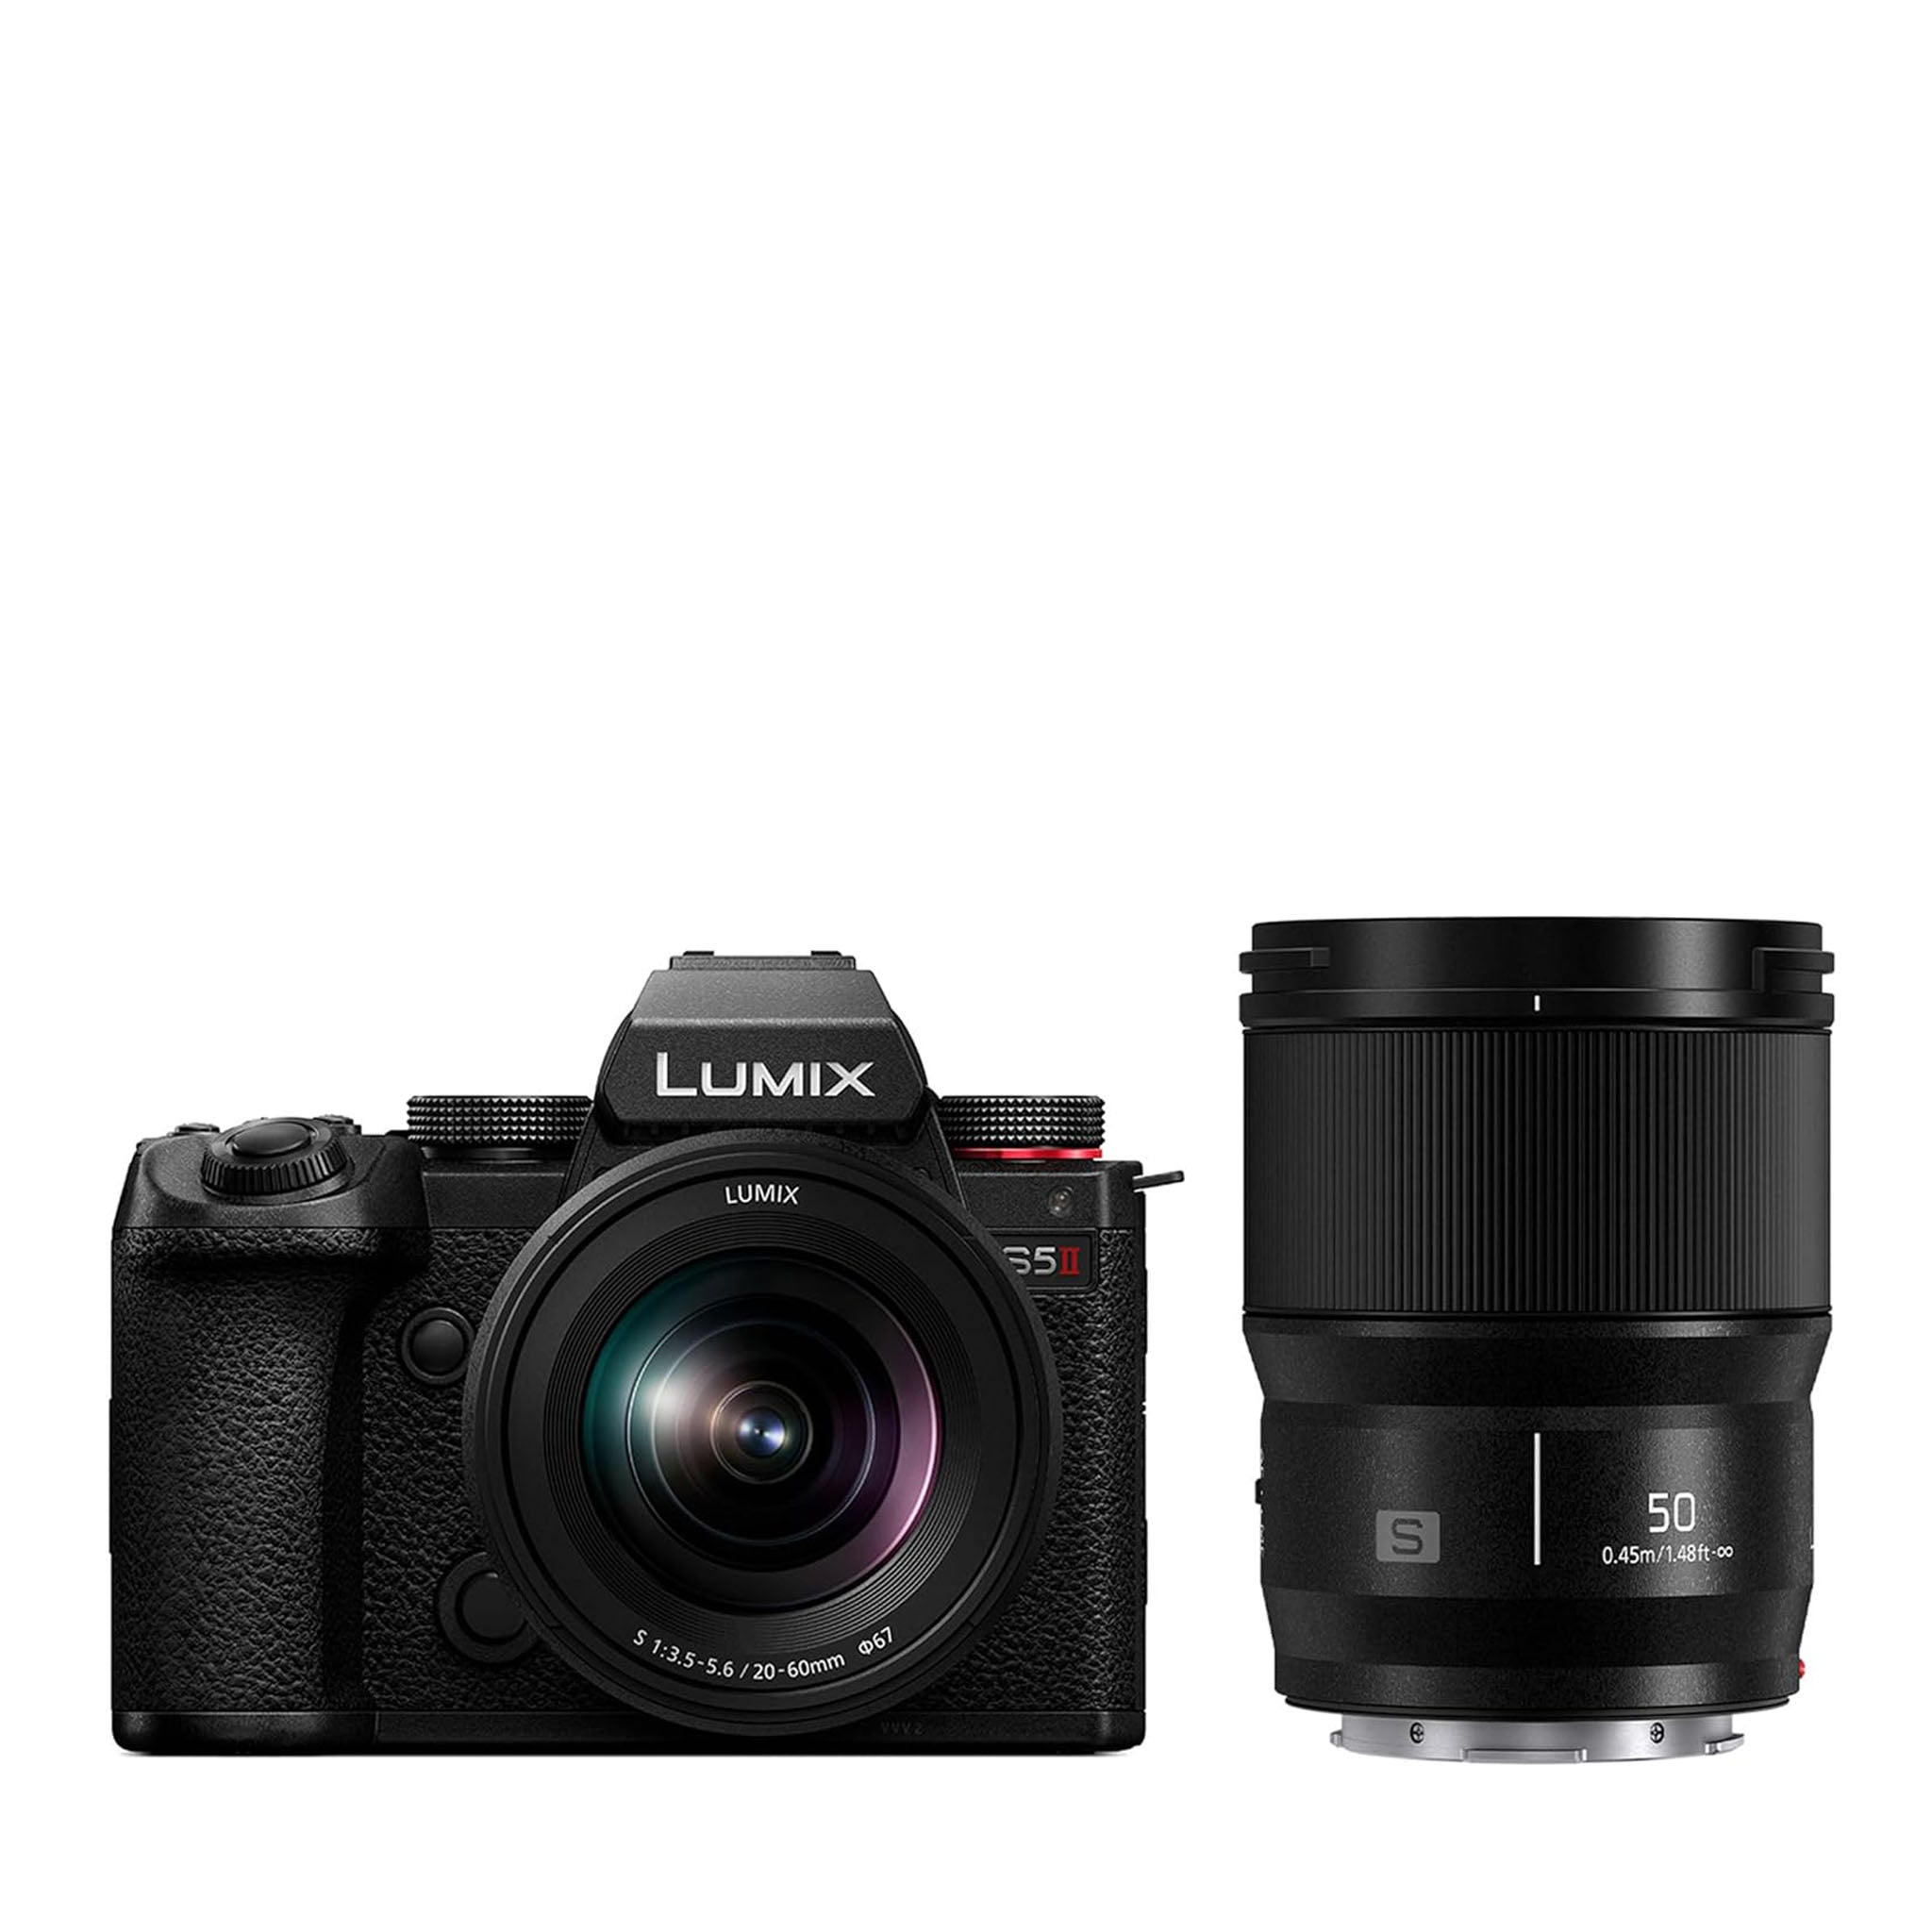 Panasonic S5M2 Full Frame Mirrorless Camera + 20-60mm F3.5-5.6 Lens + 50mm F1.8 Lens $2149.99